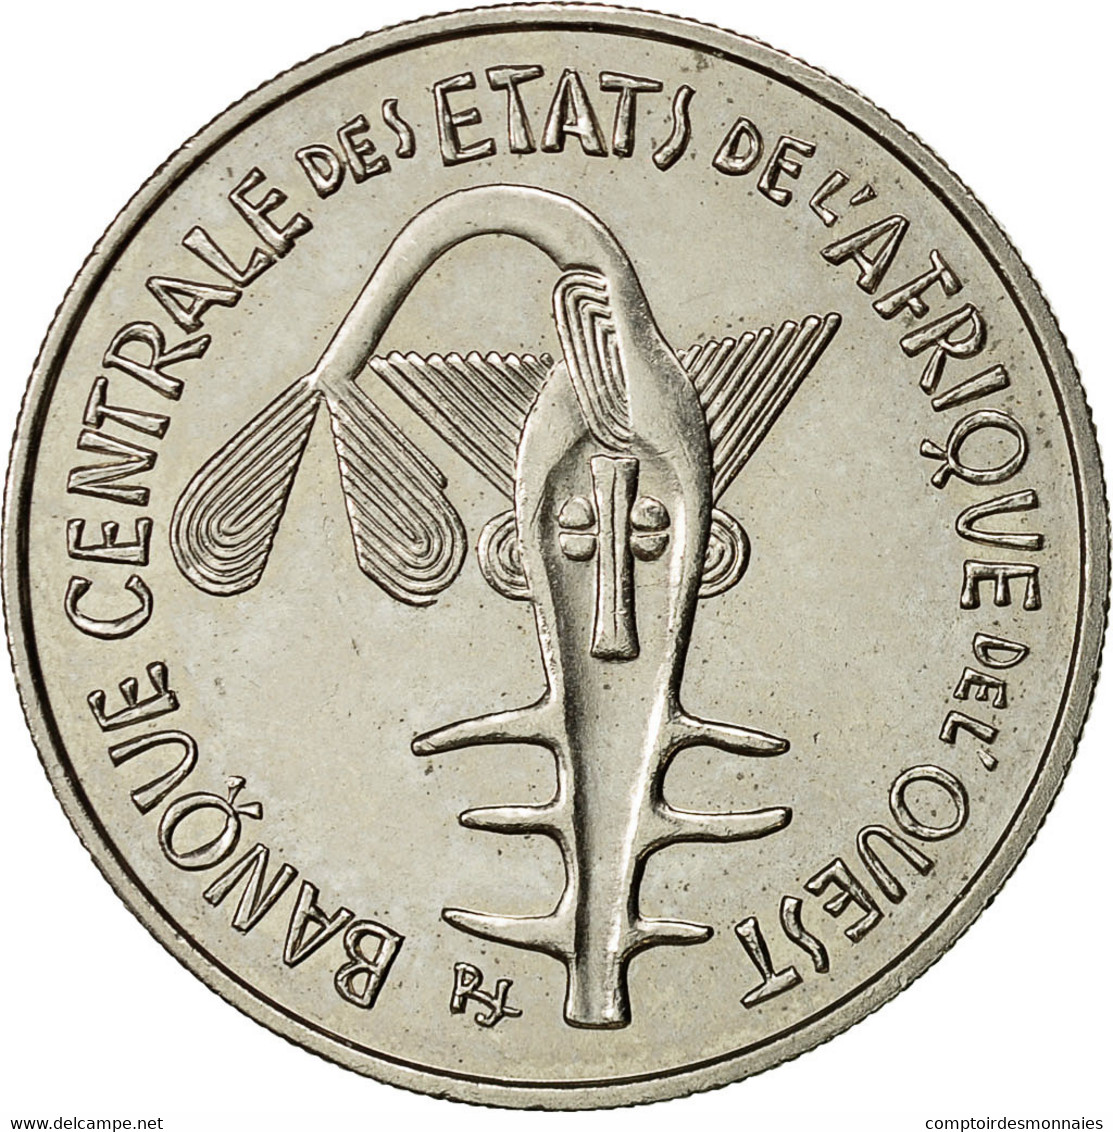 Monnaie, West African States, 100 Francs, 1971, TTB+, Nickel, KM:4 - Côte-d'Ivoire